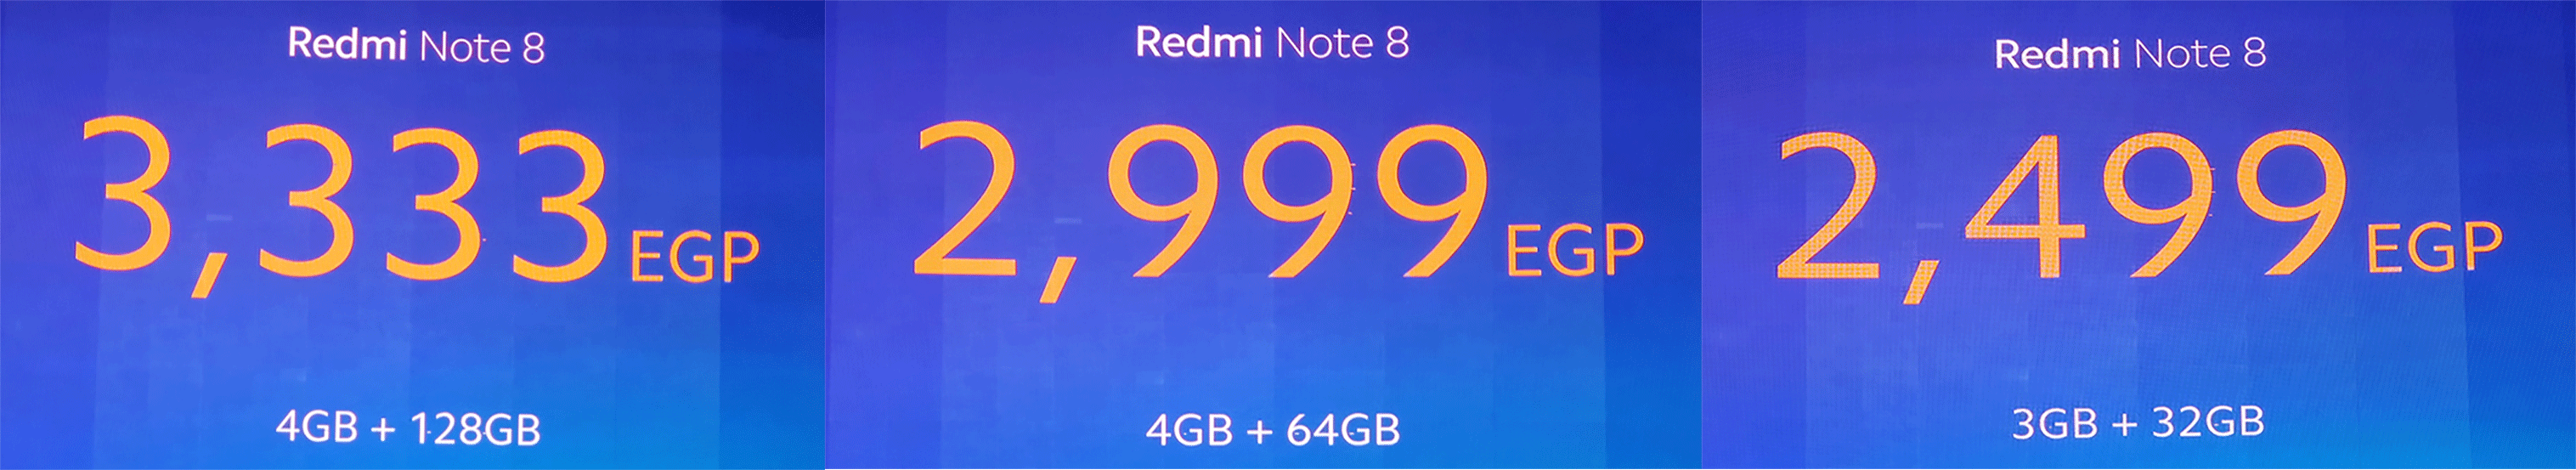 Redmi Note 8 price